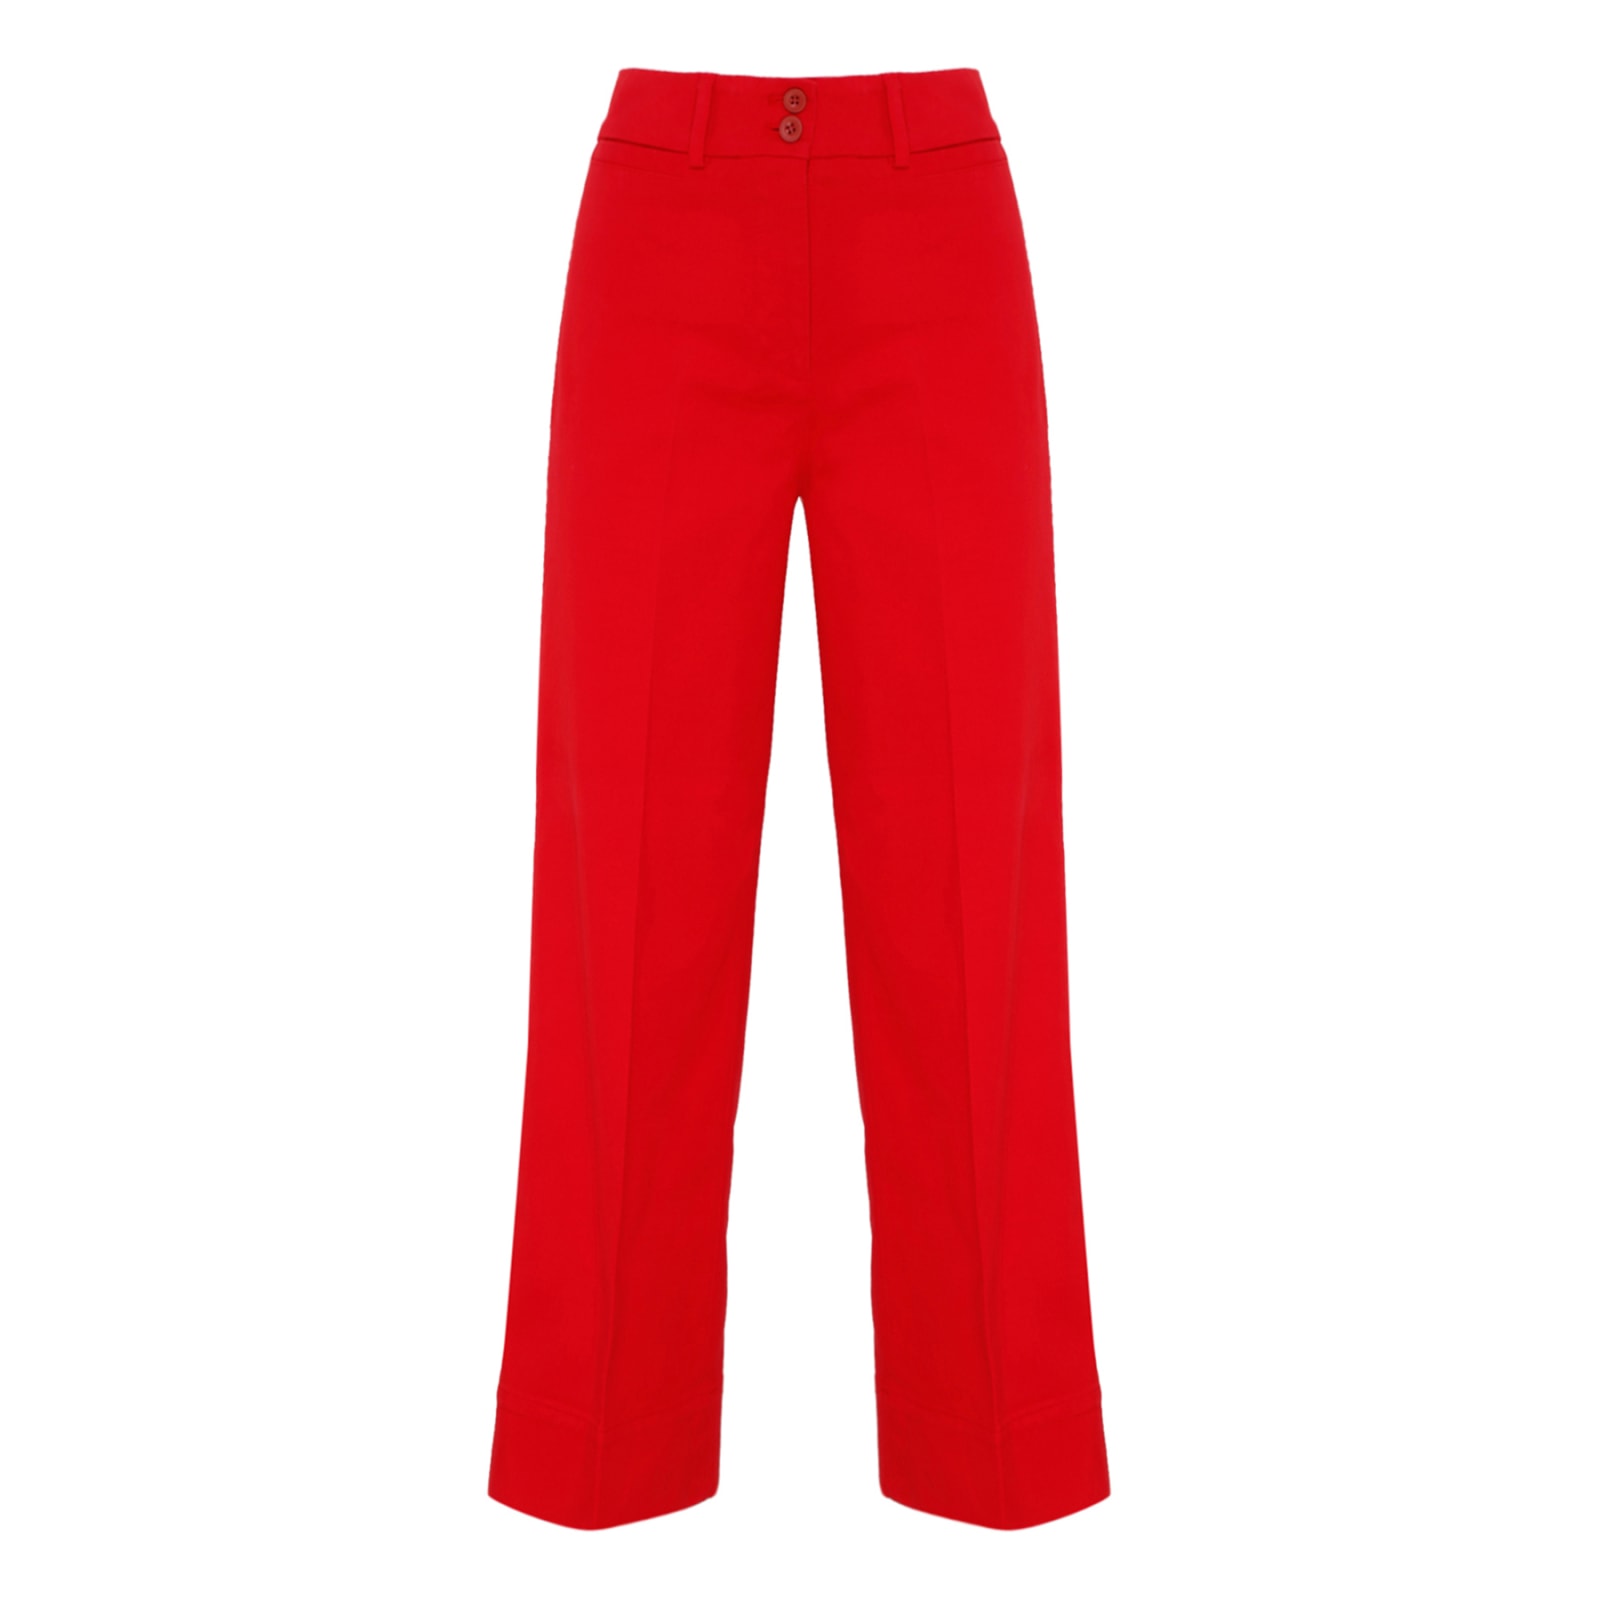 QL2 Red Sibilla Cotton Blend High Waist Pants